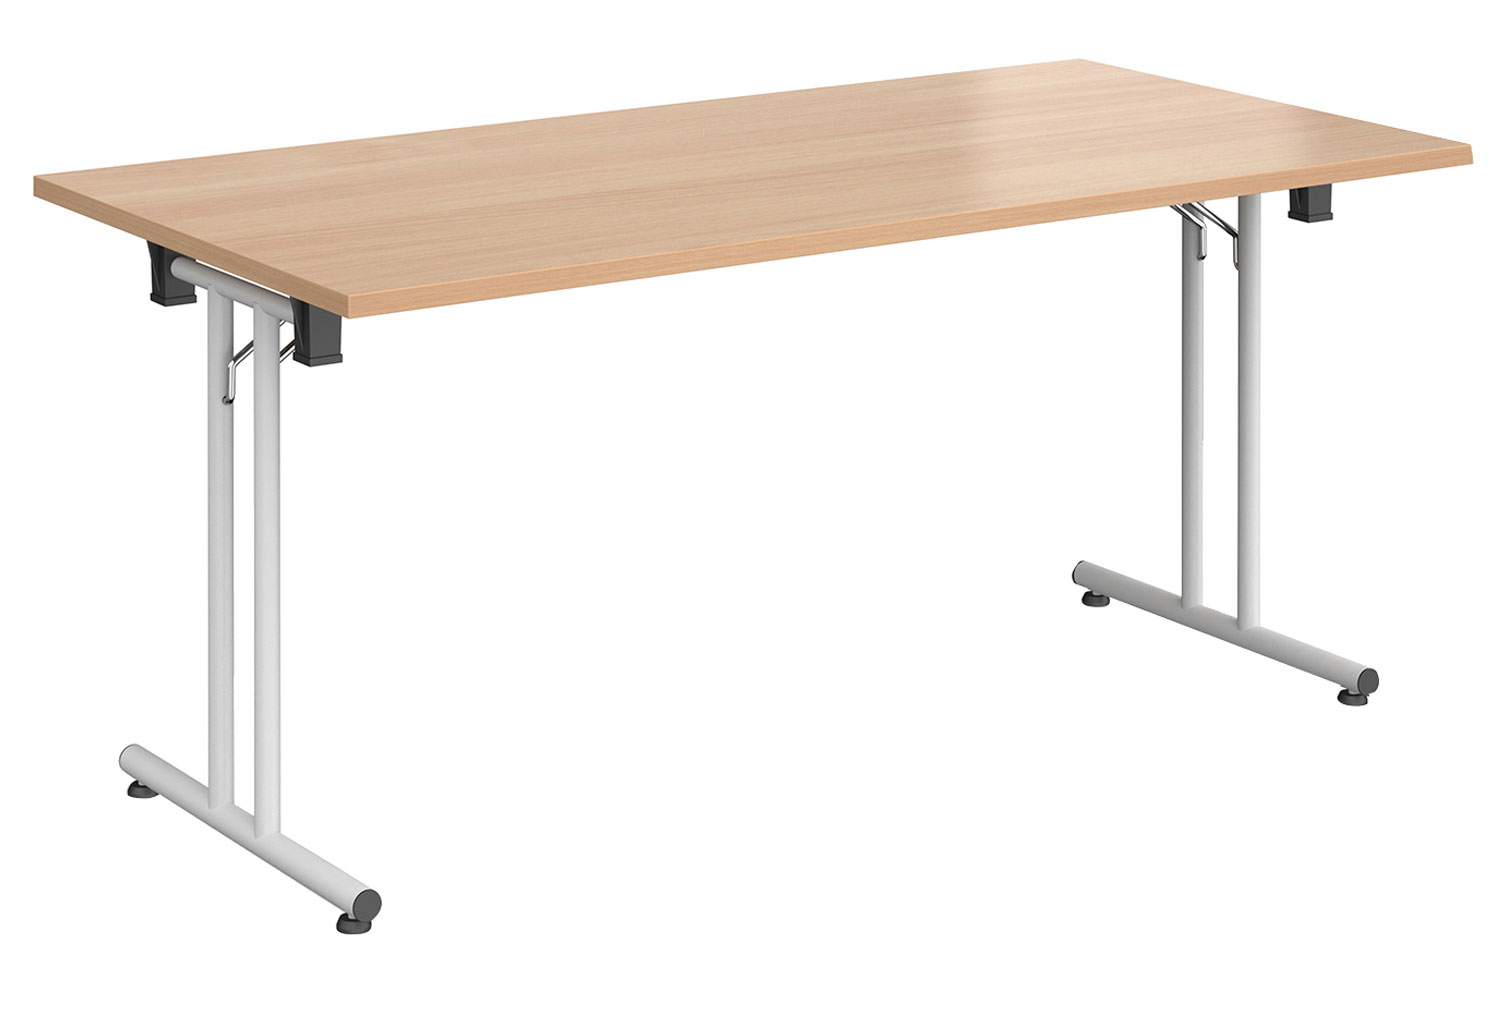 All Beech Rectangular Folding Table, 160wx80dx73h (cm)